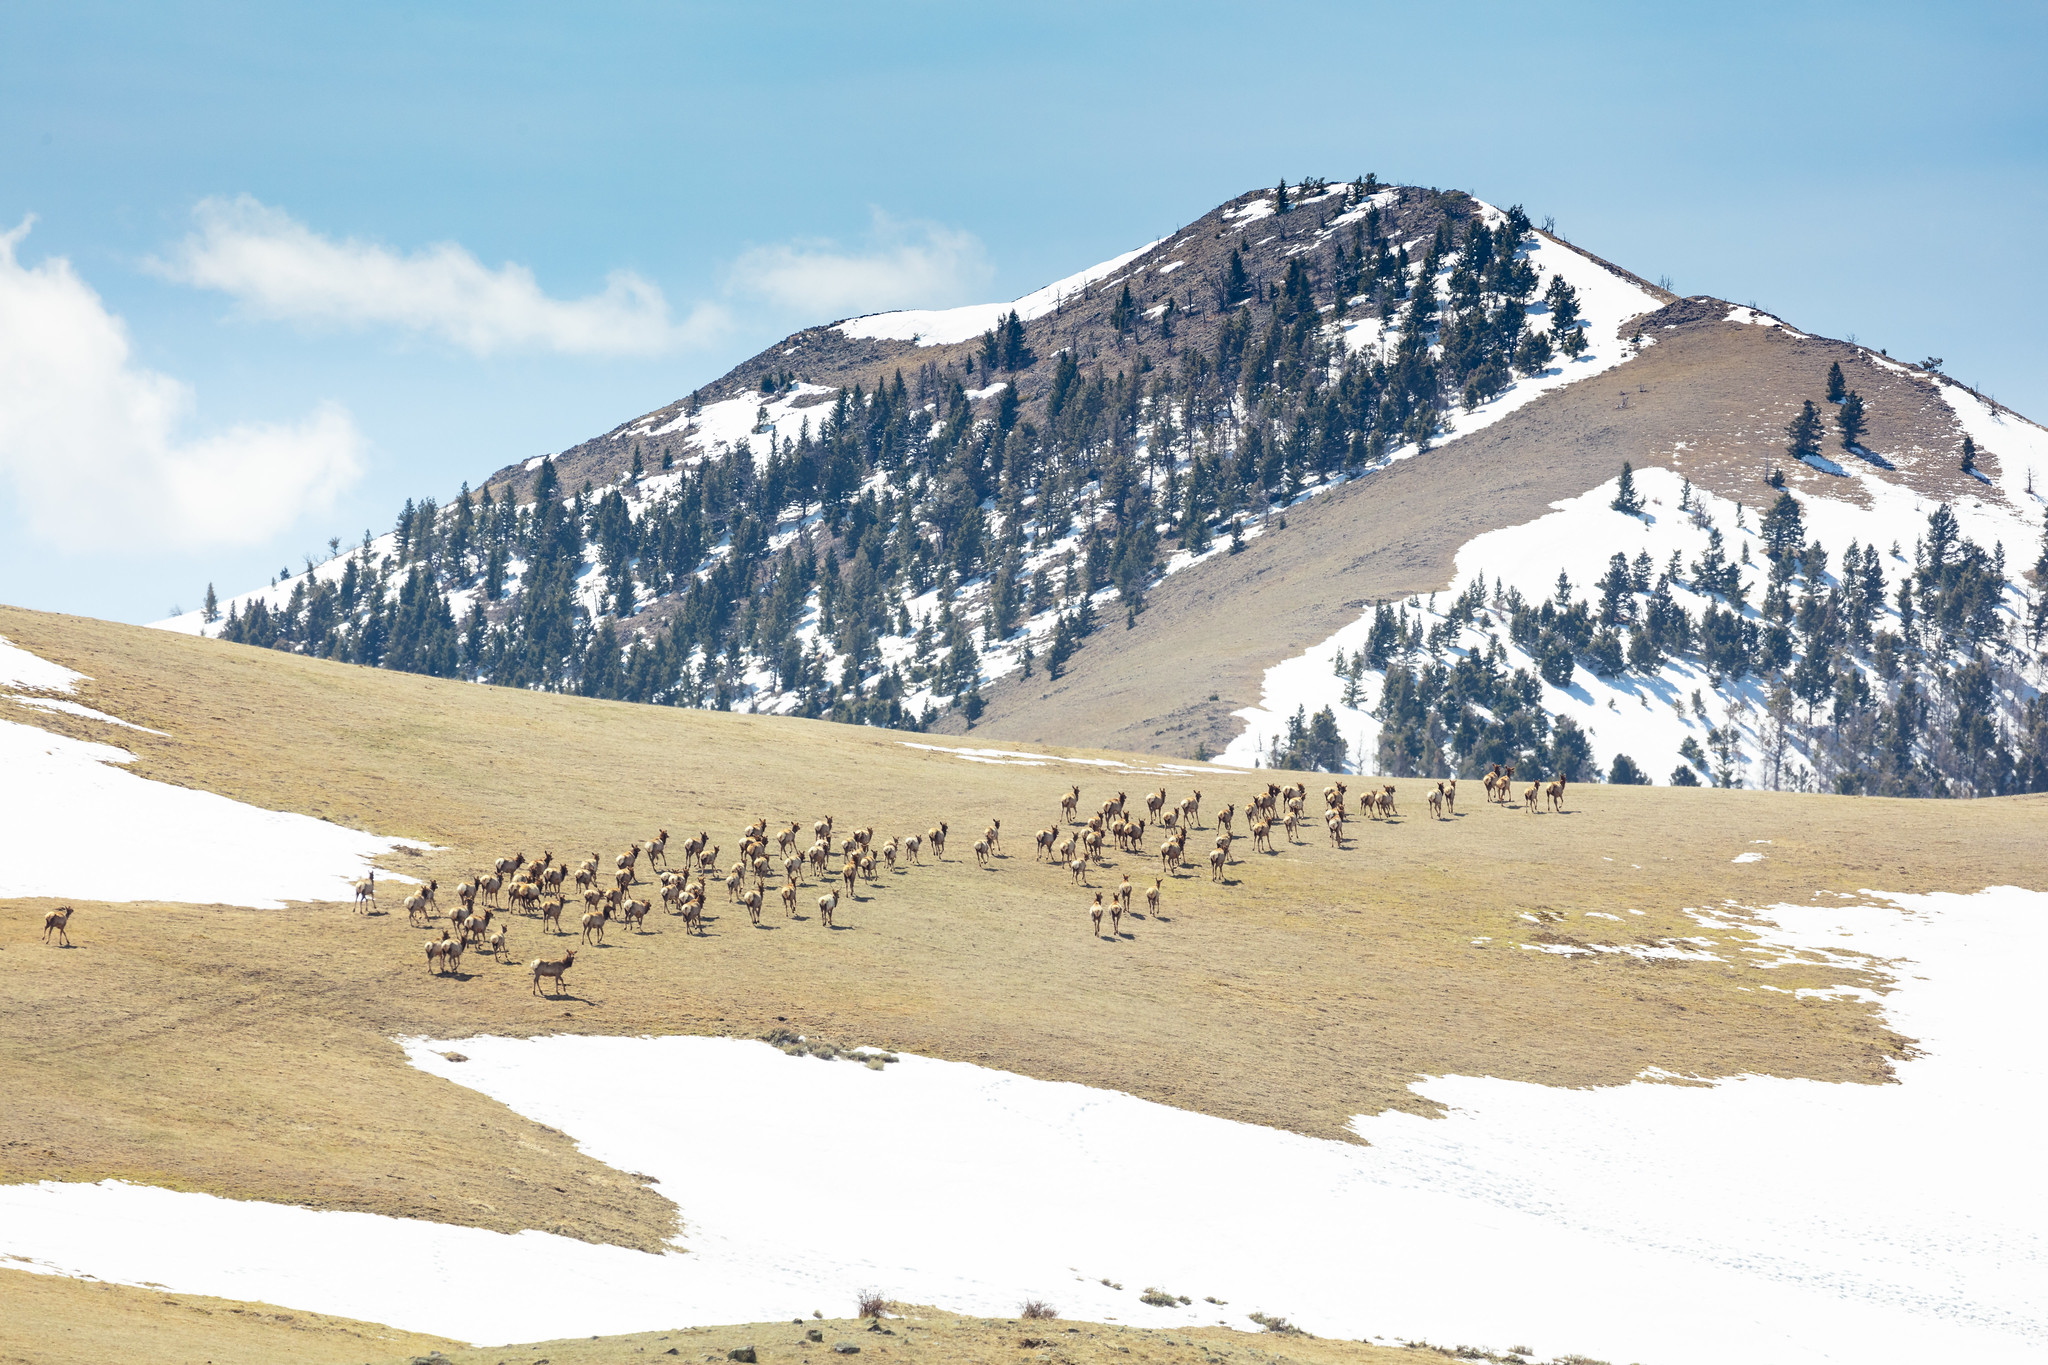 Elk herd in snowy mountains.